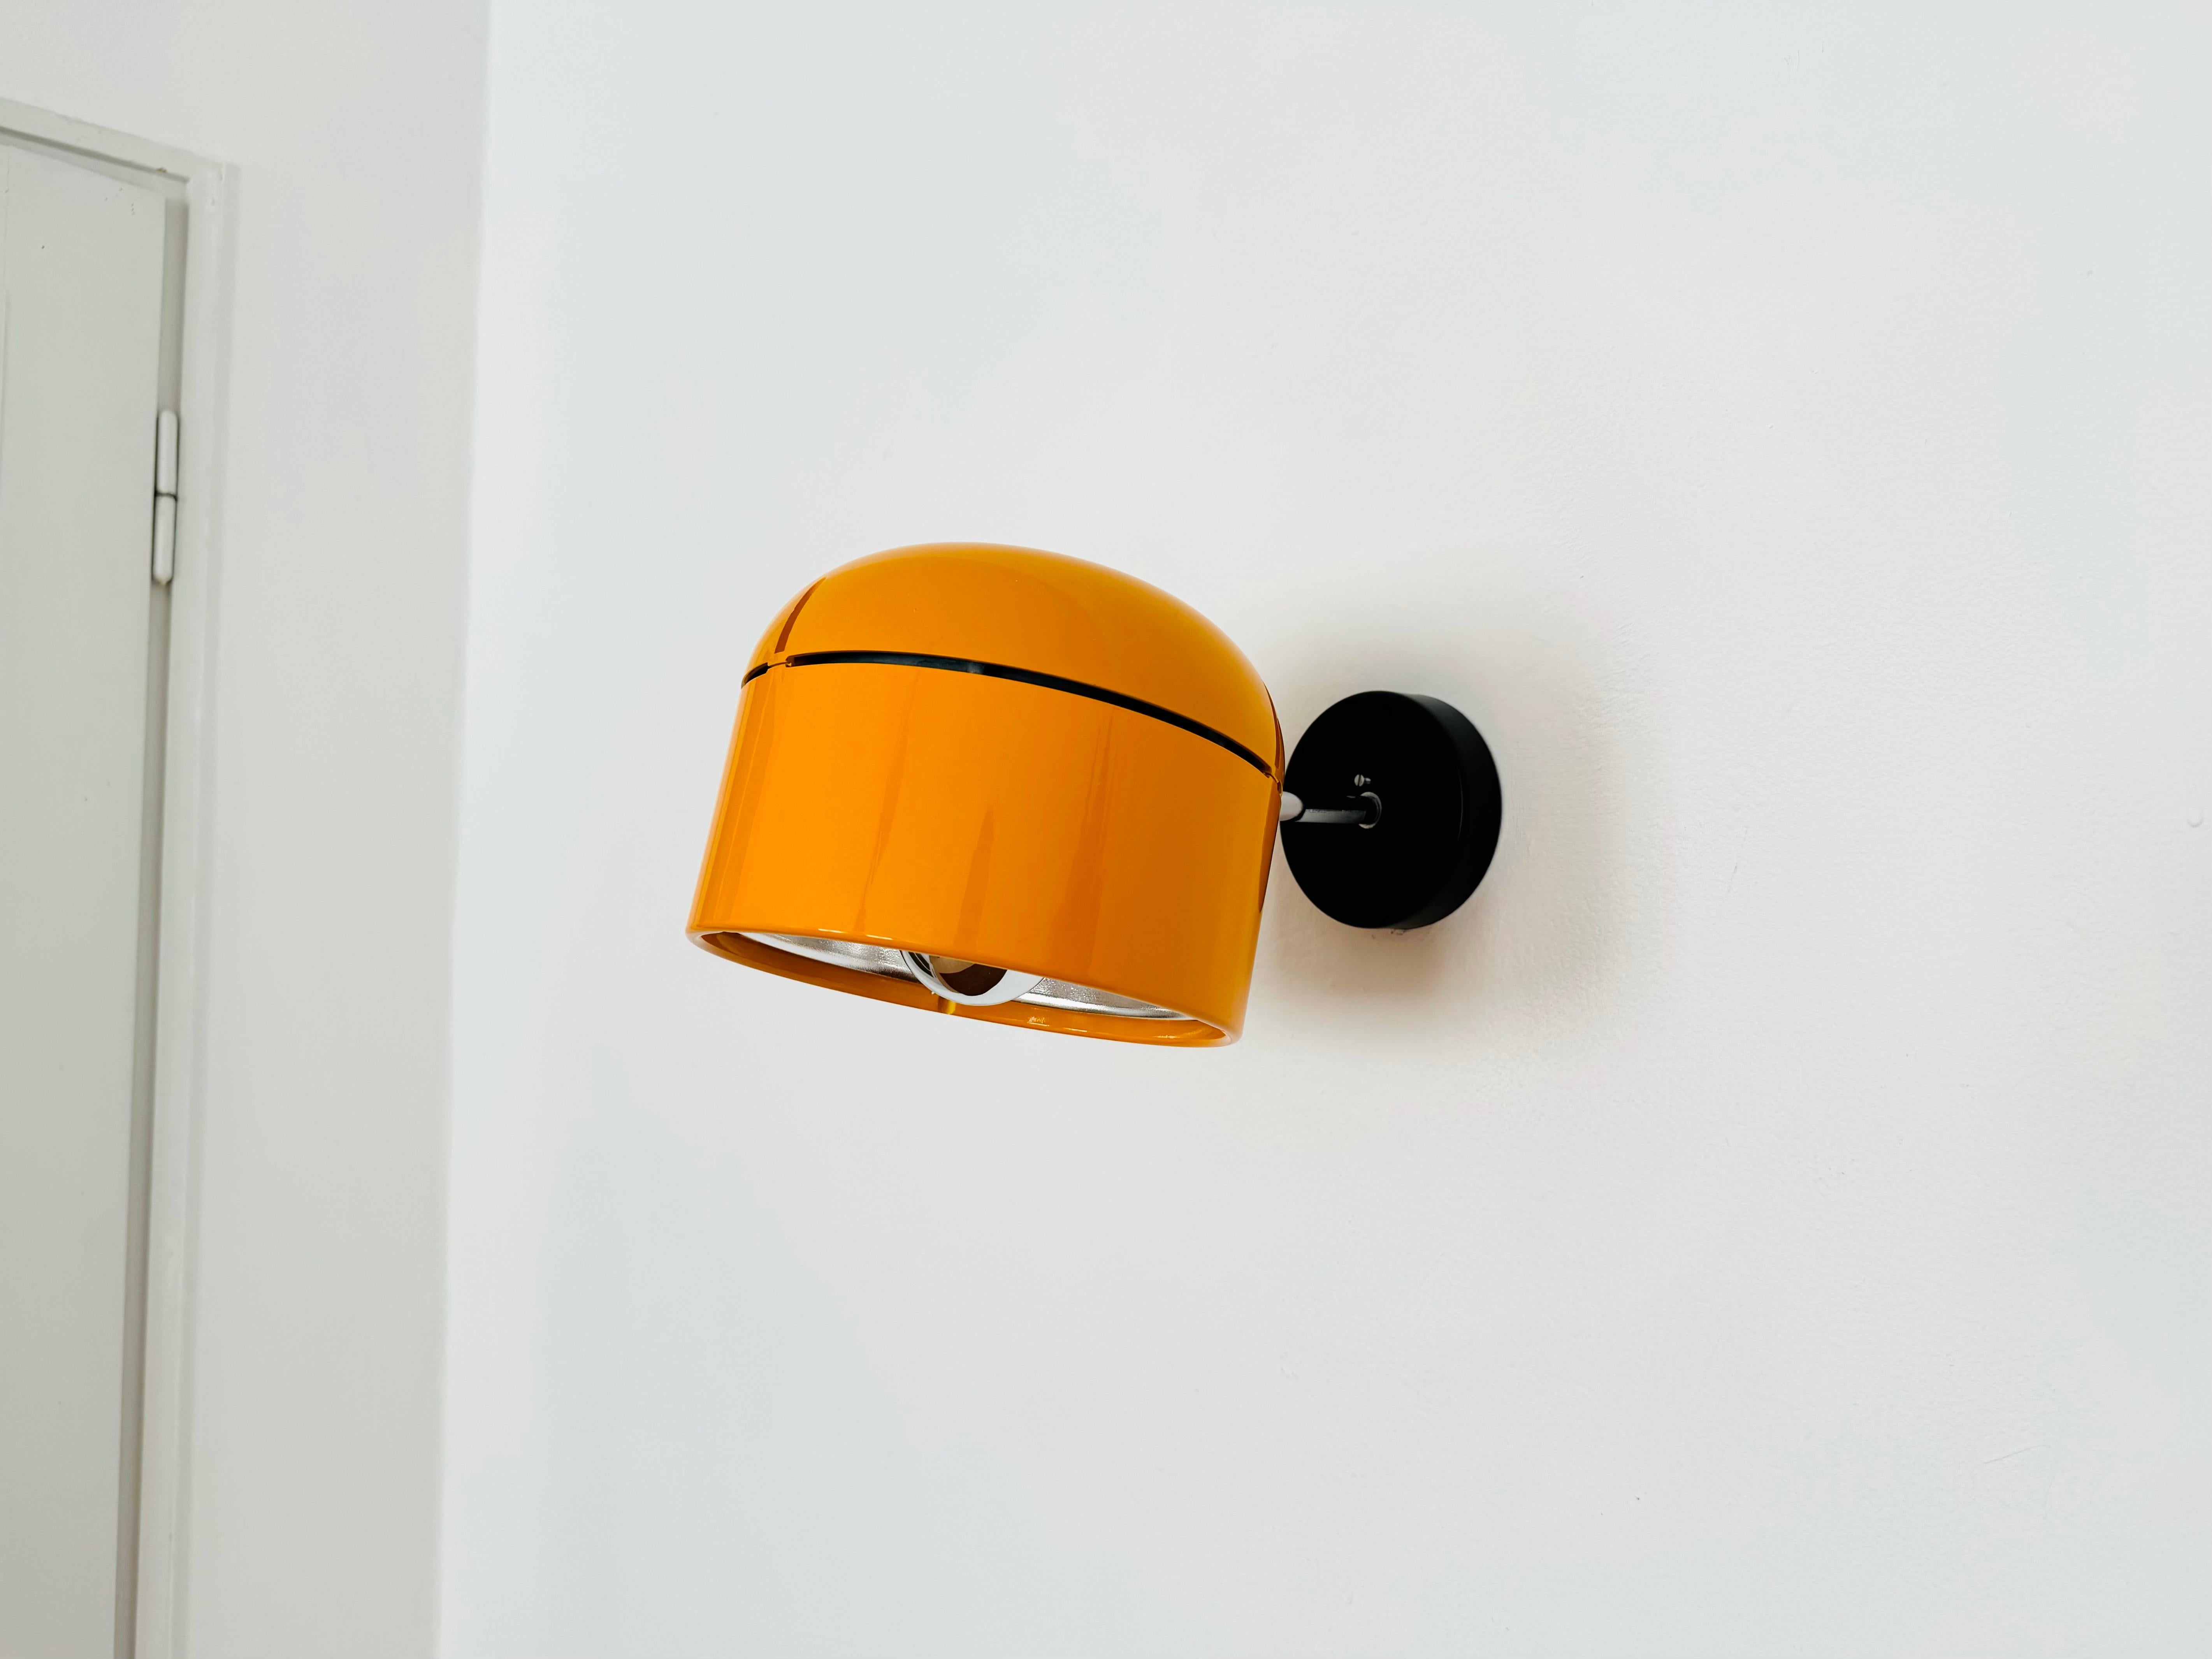 Fantastische Lampe für die Wand- oder Deckenmontage aus den 1970er Jahren.
Die Marke Staff ist bekannt für ihre hochwertige Verarbeitung und ihr perfektionistisches Design.
Der große gelb-orangefarbene Lampenkopf ist stufenlos verstellbar.
Der